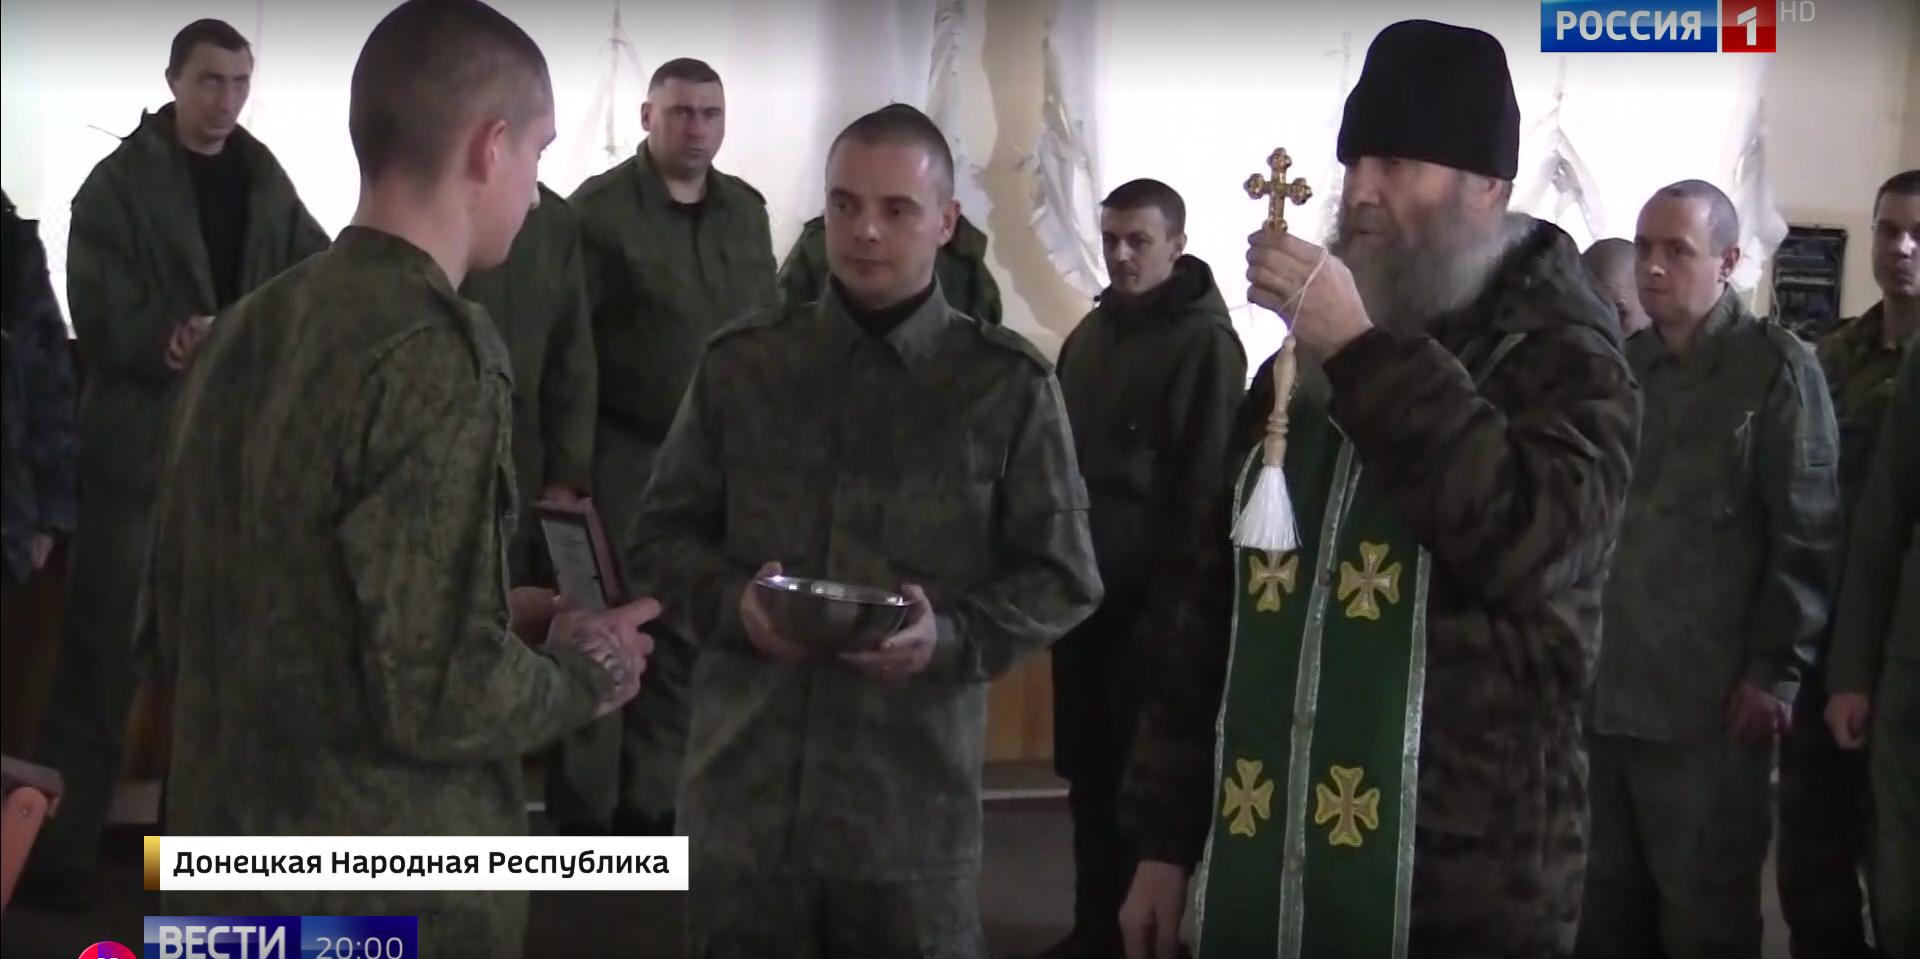 Żołnierze na froncie i pop prawosławny